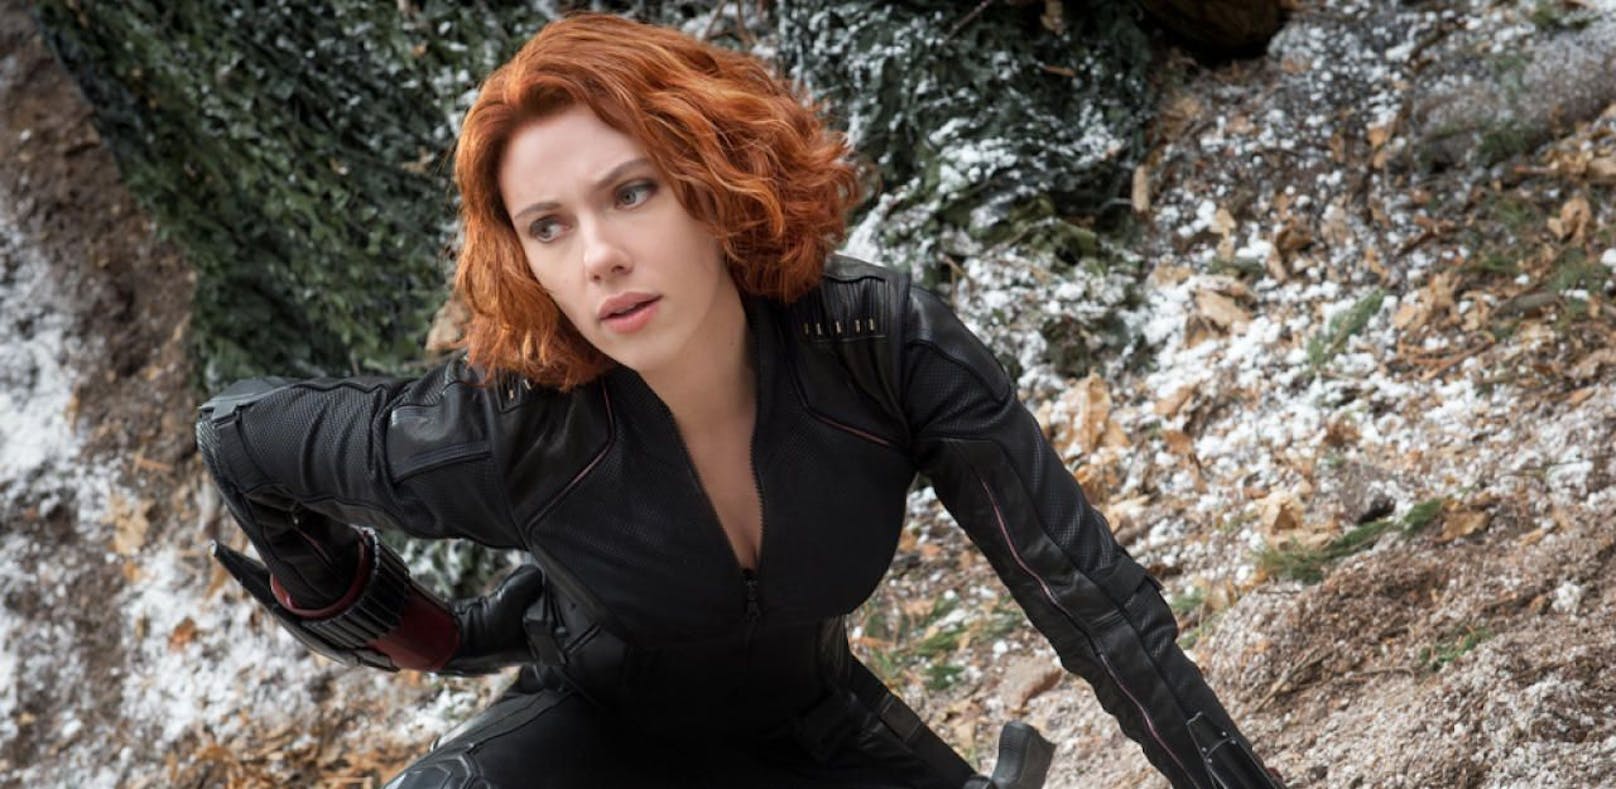 Tausende wollen Marvel-Film ohne Männer